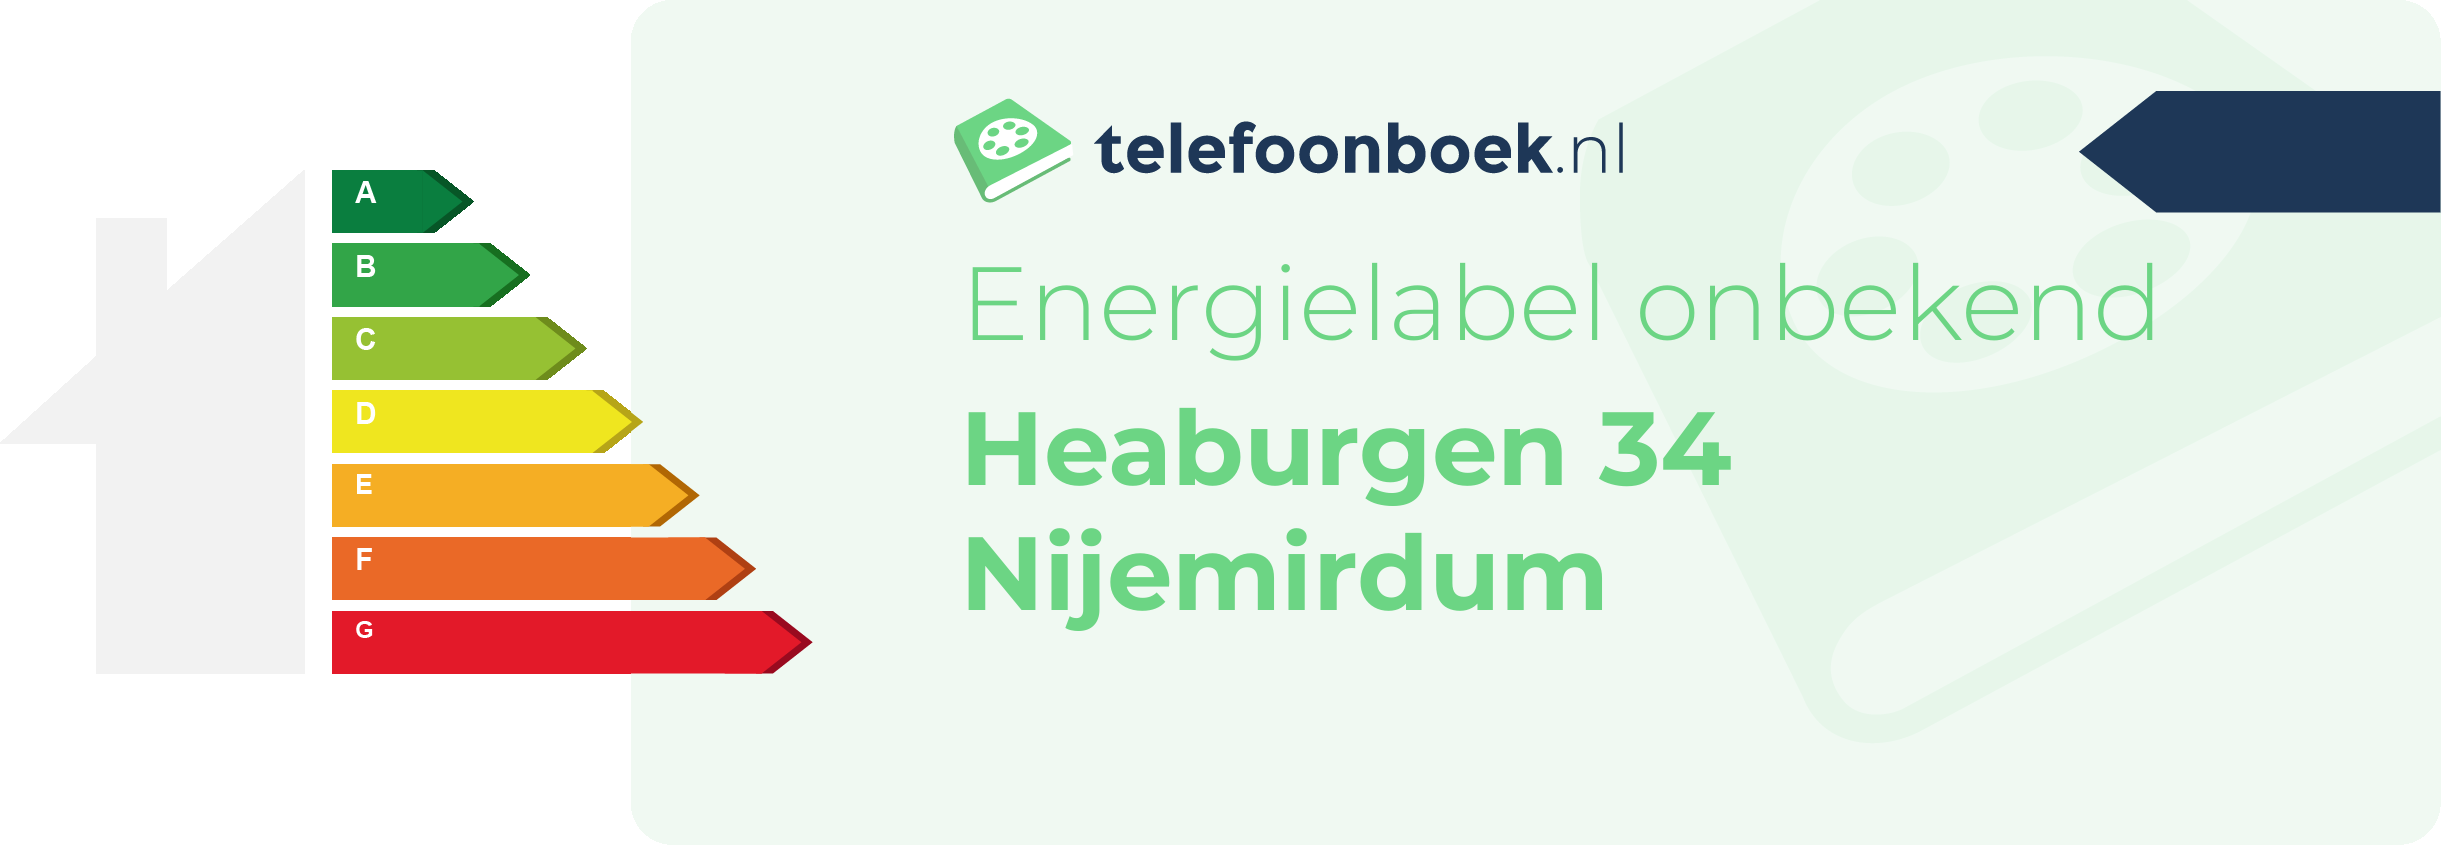 Energielabel Heaburgen 34 Nijemirdum